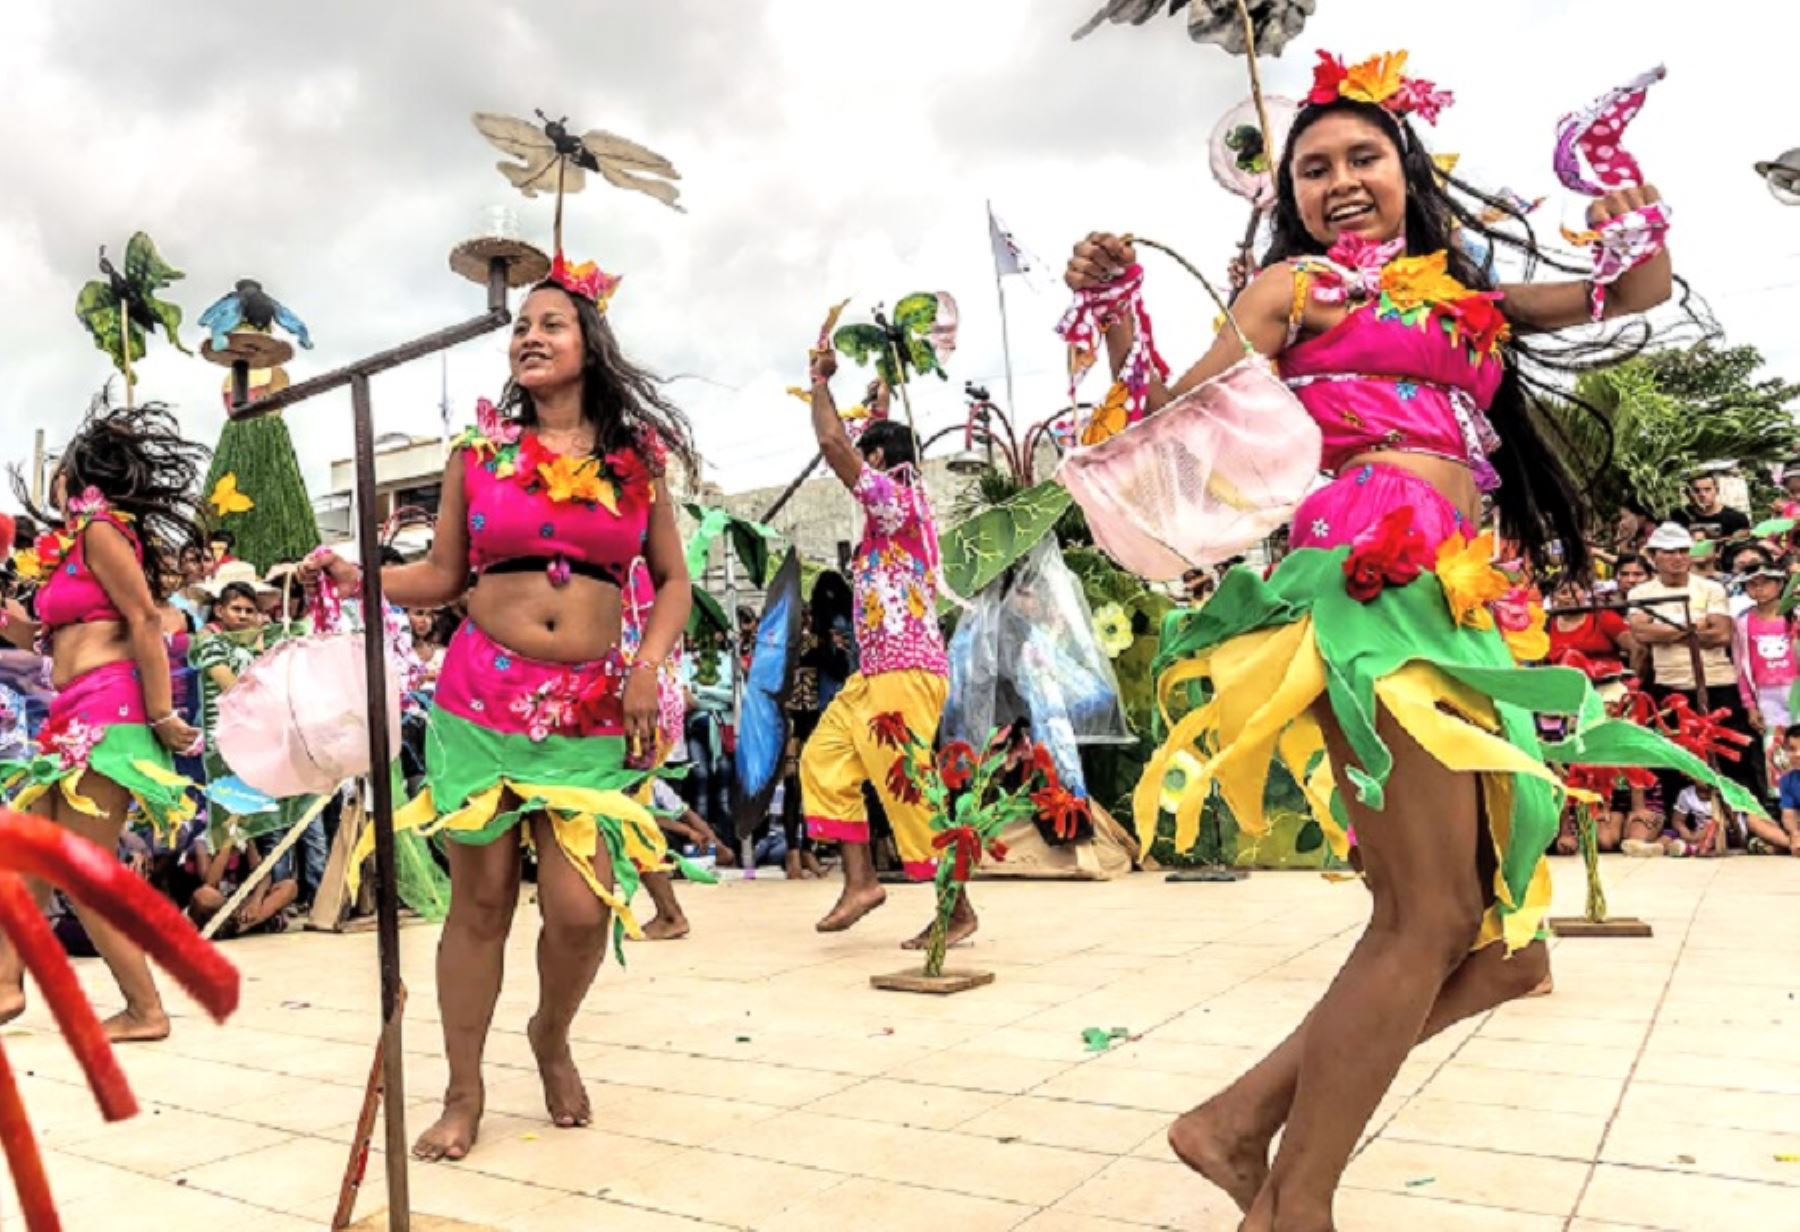 Las regiones amazónicas del Perú se alistan para celebrar, el próximo 24 de junio, la tradicional y exultante Fiesta de San Juan, la celebración más importante del calendario festivo de los pueblos de la selva peruana.